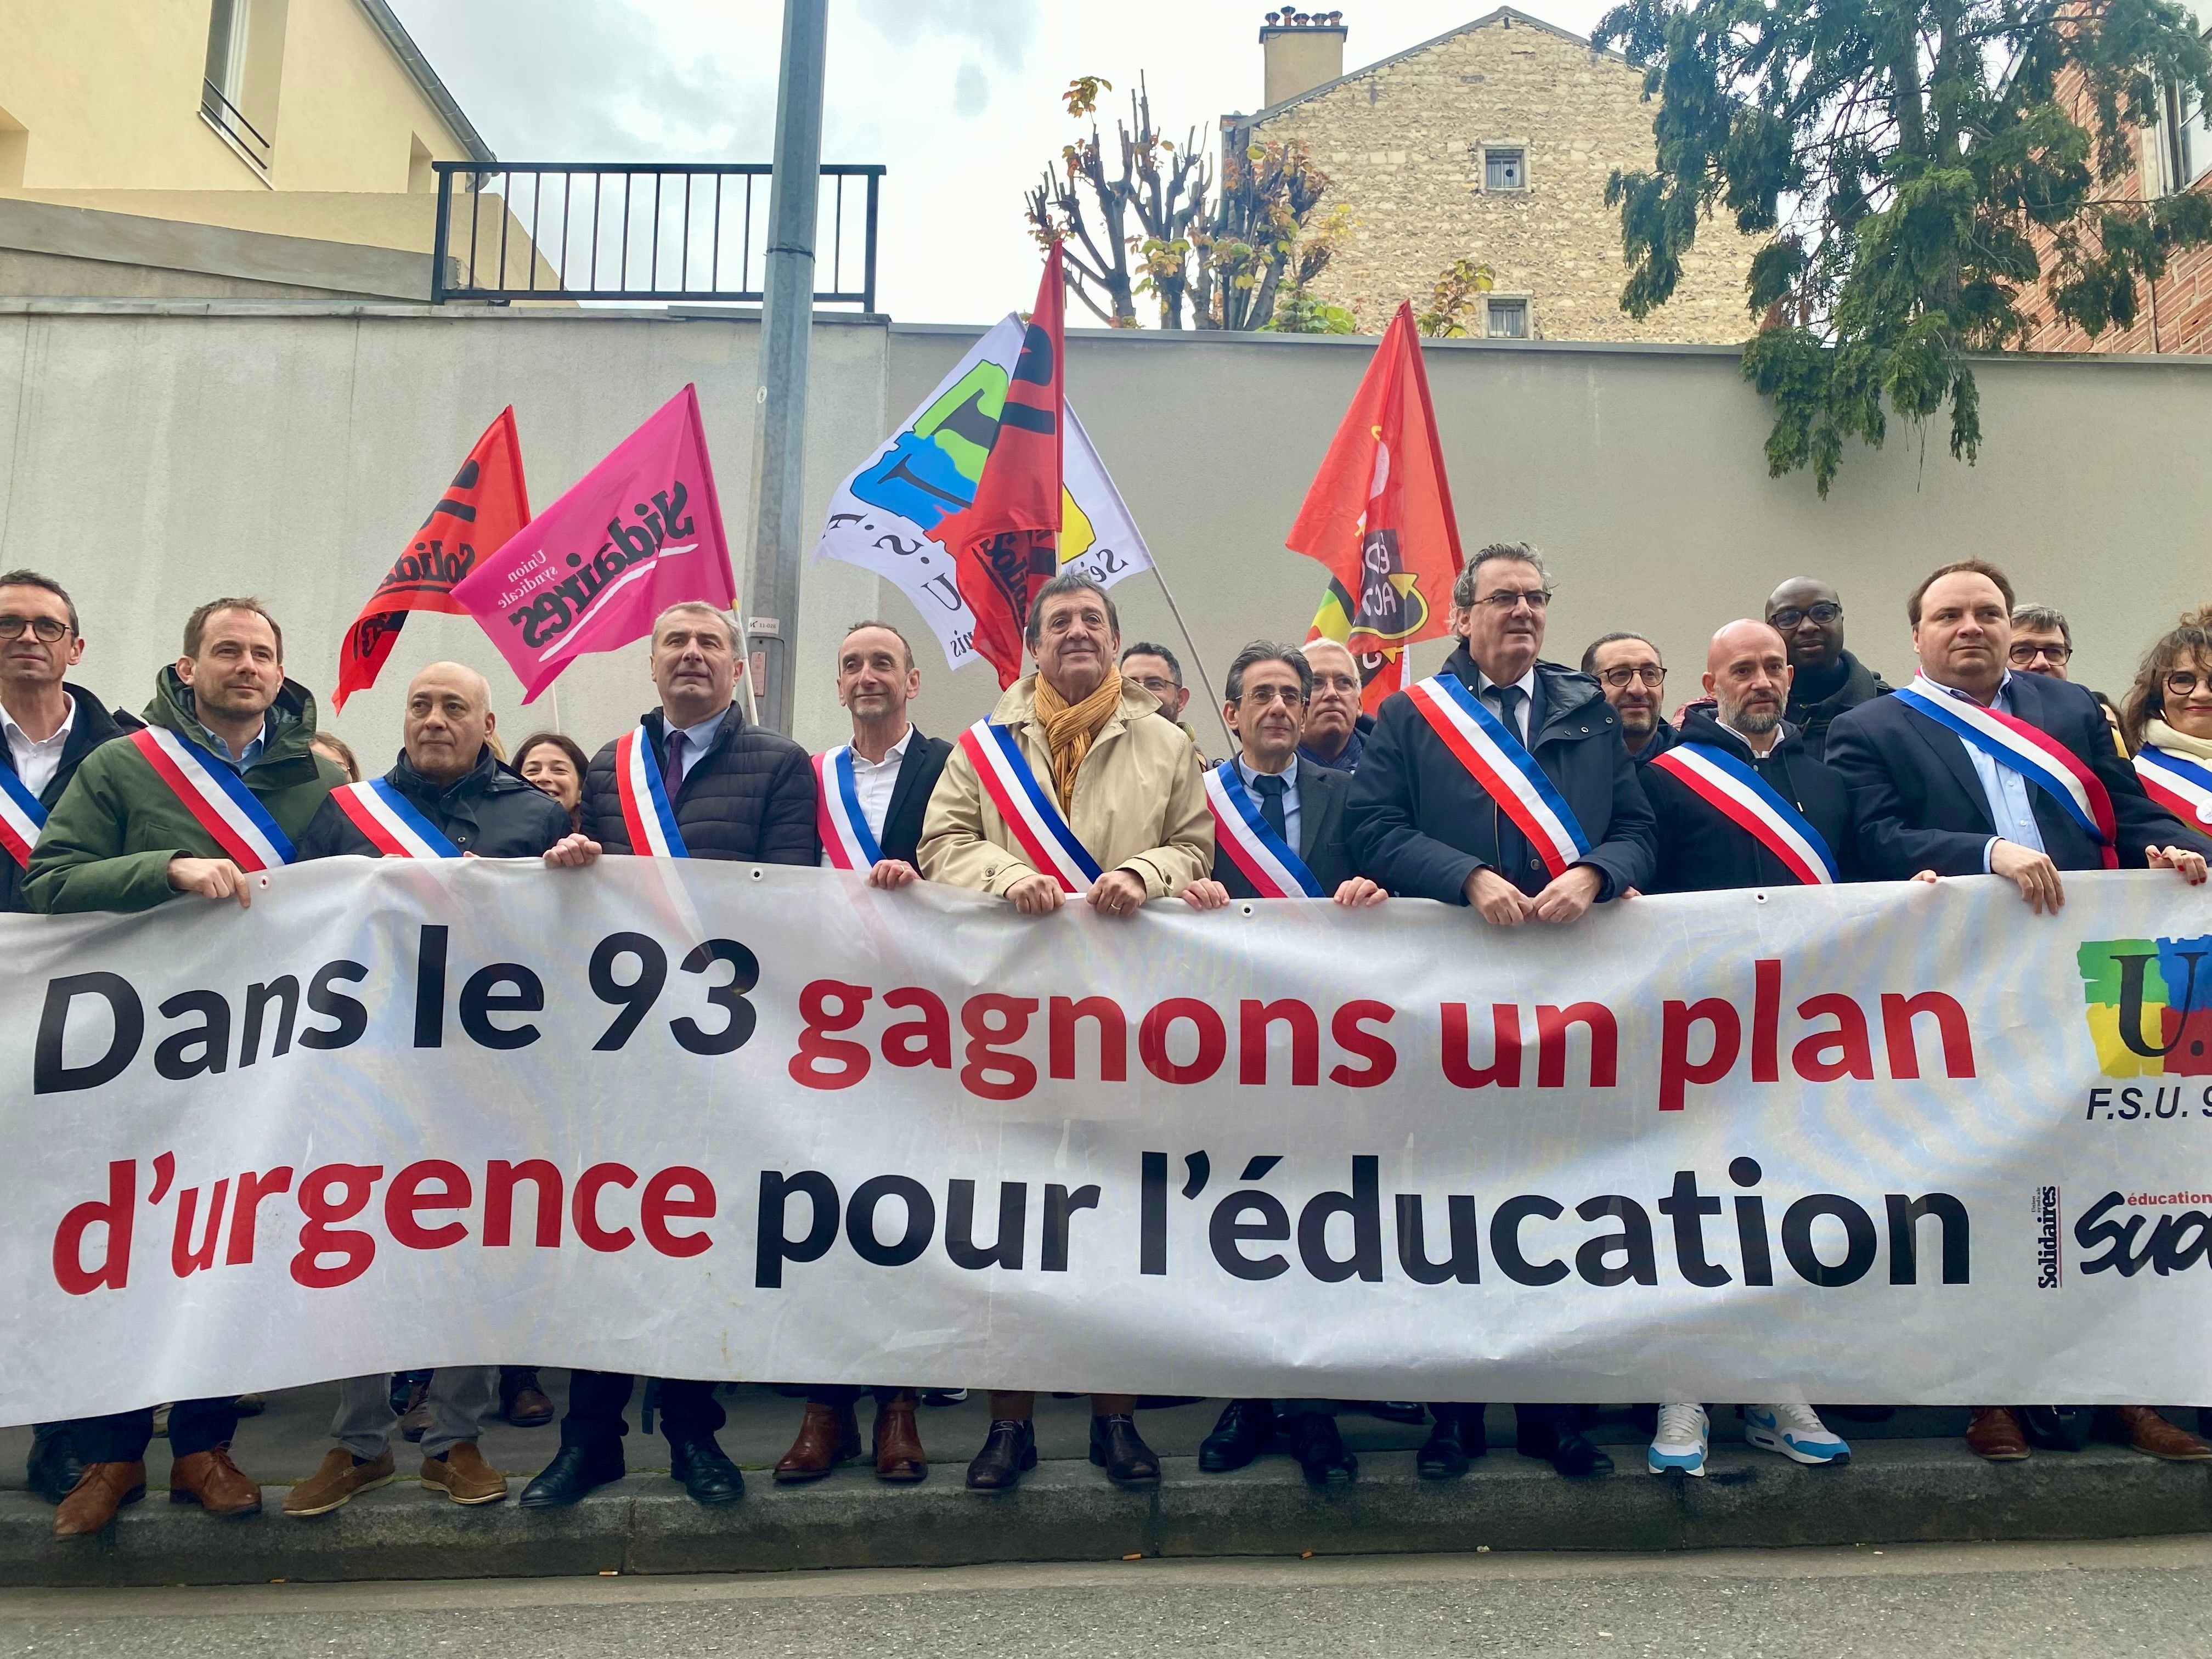 Montreuil, ce mercredi. 12 maires de Seine-Saint-Denis étaient au tribunal administratif de Montreuil pour défendre leurs arrêtés pour l'éducation en Seine-Saint-Denis. LP / Hélène Haus